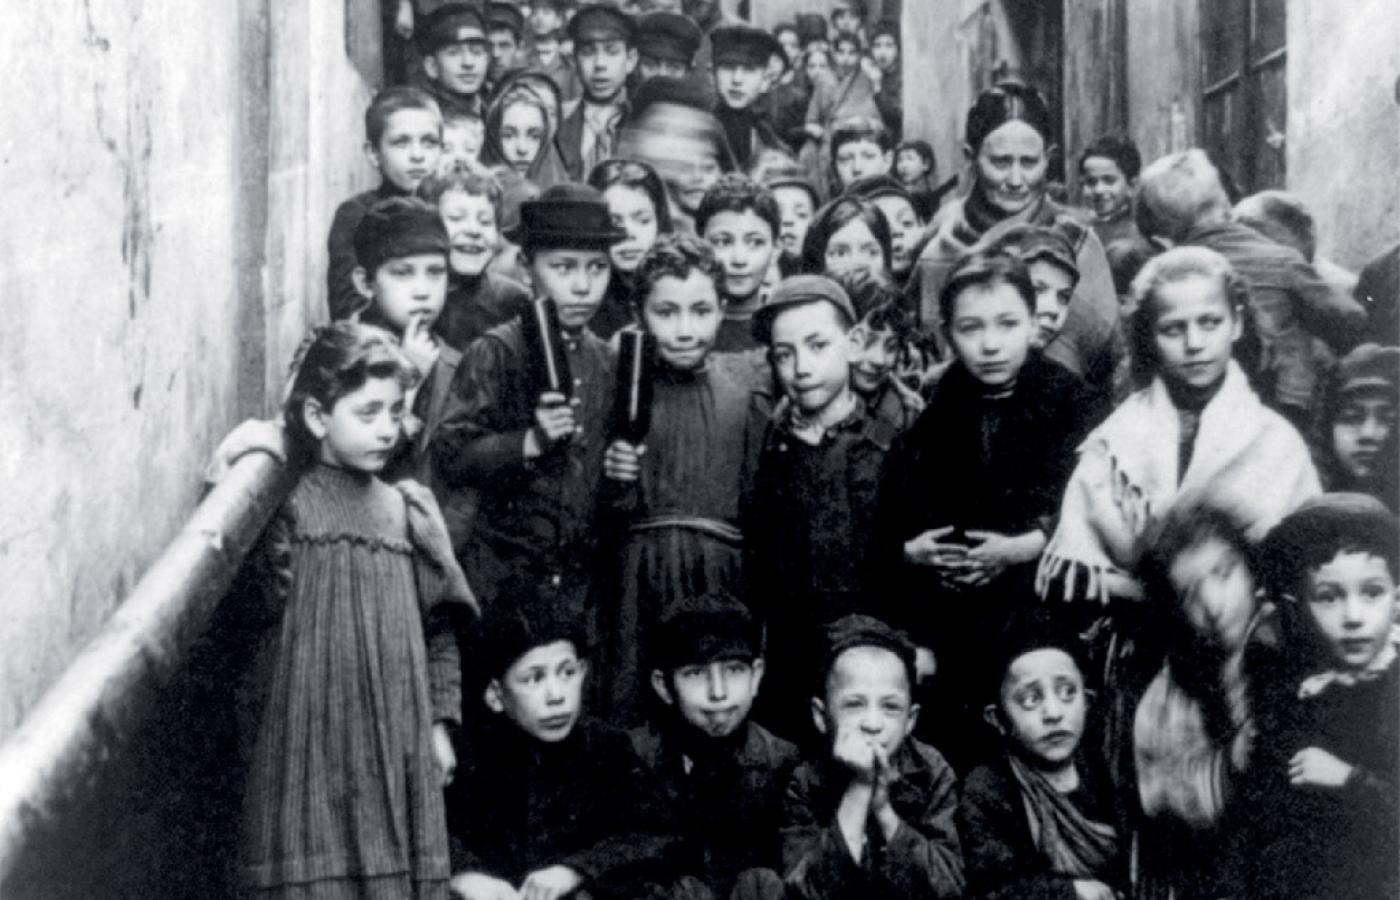 Dzieci żydowskie; prawdopodobnie fotografia została wykonana przy Kamiennych Schodkach na Starym Mieście w Warszawie.